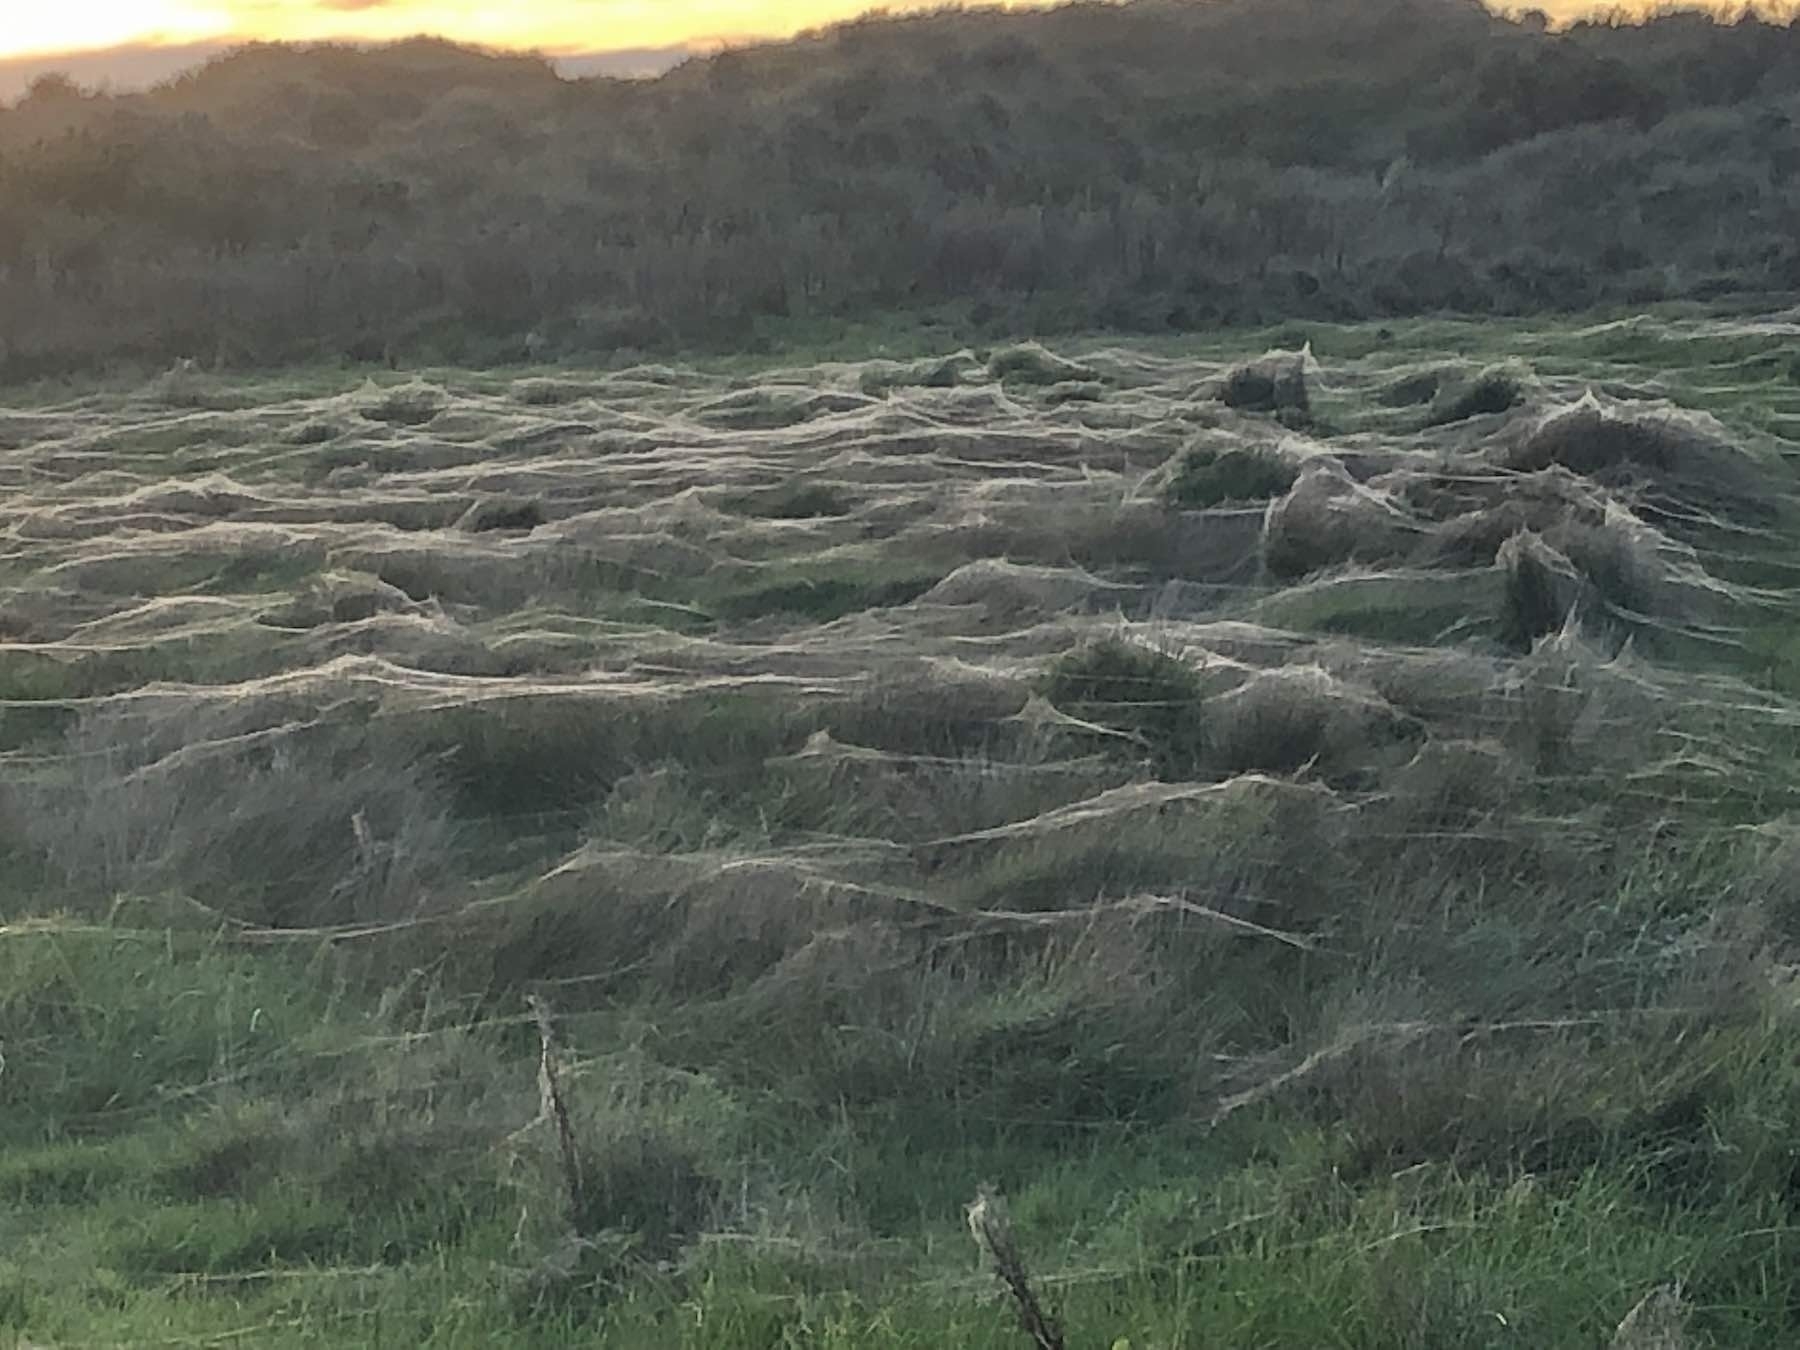 Spider webs blanket a paddock. 